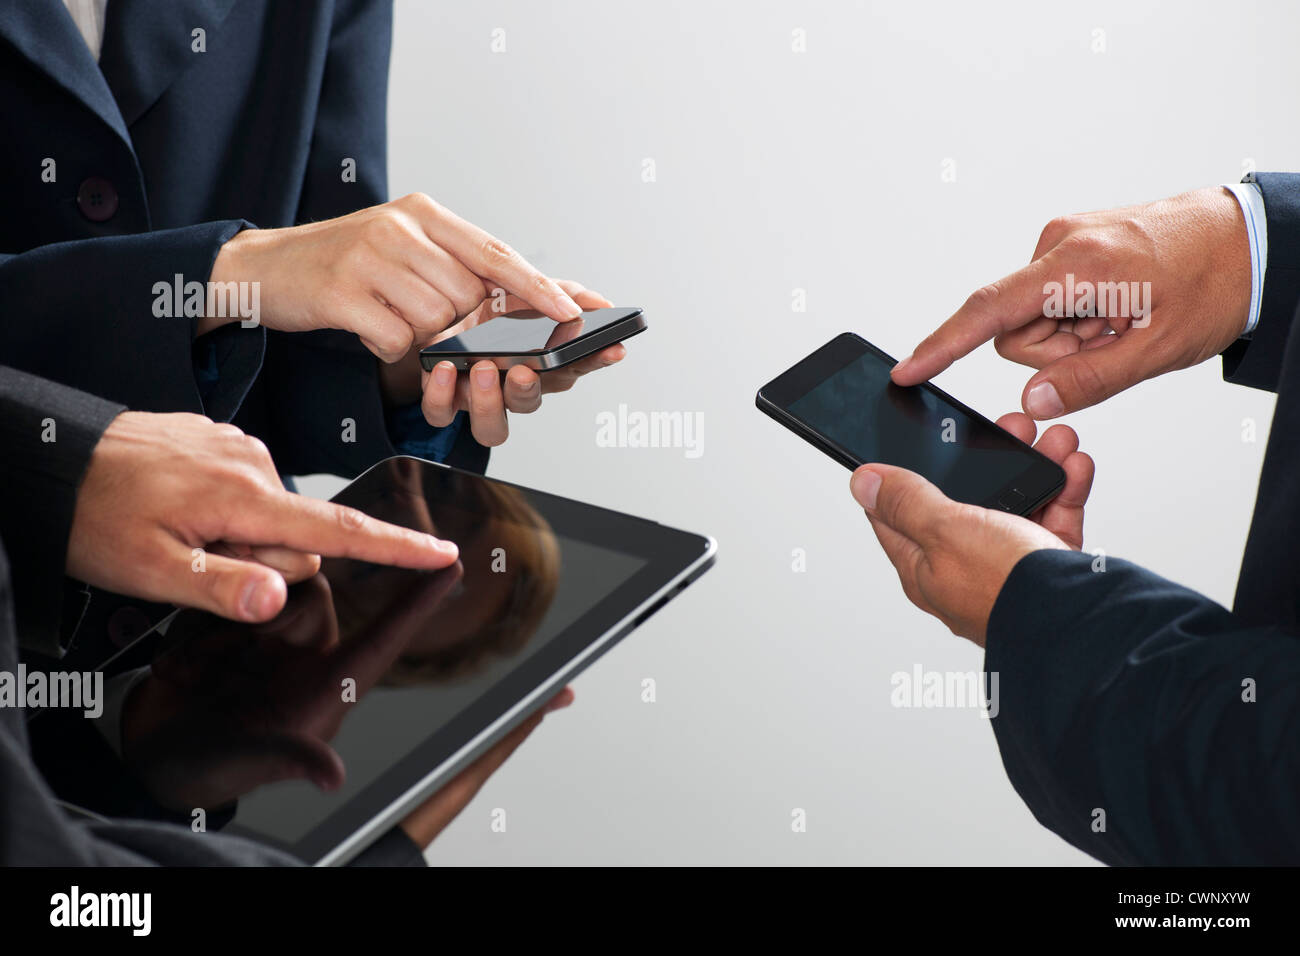 L'échange d'informations avec leurs collègues des smartphones et tablettes numériques, cropped Banque D'Images